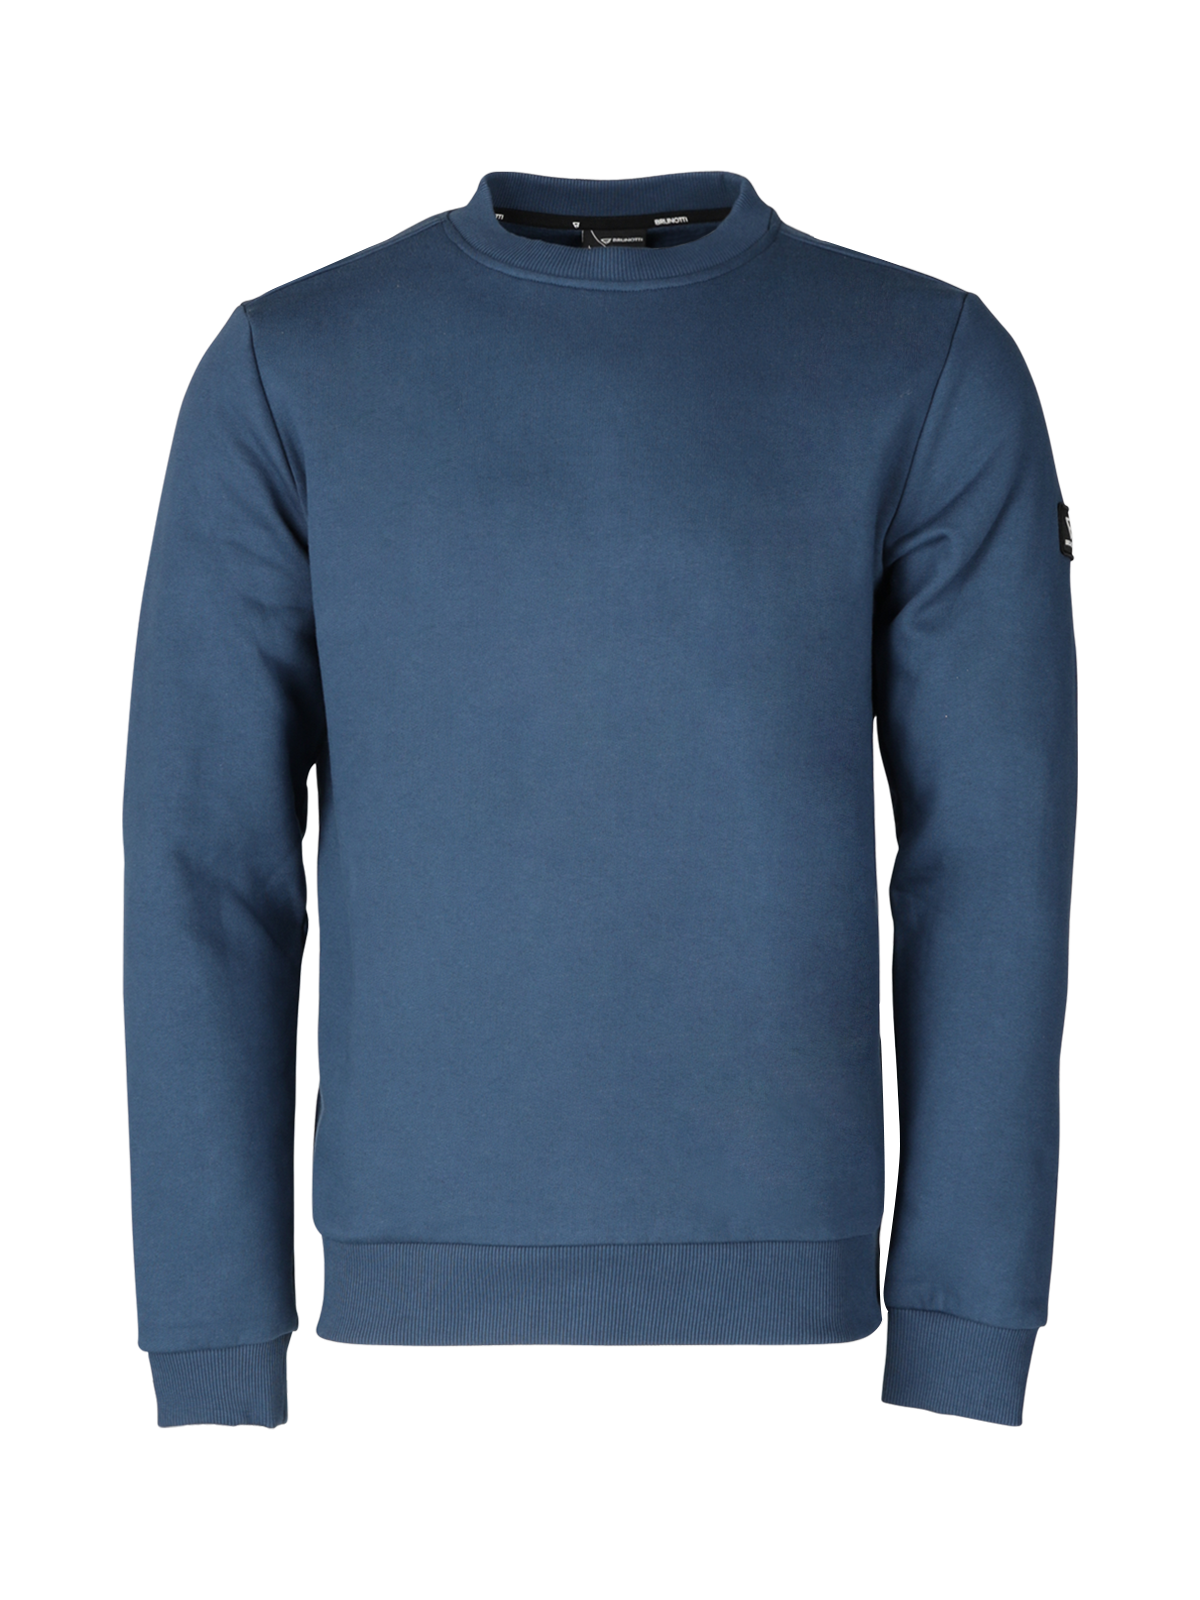 Notcher-N Herren Sweatshirt | Blau